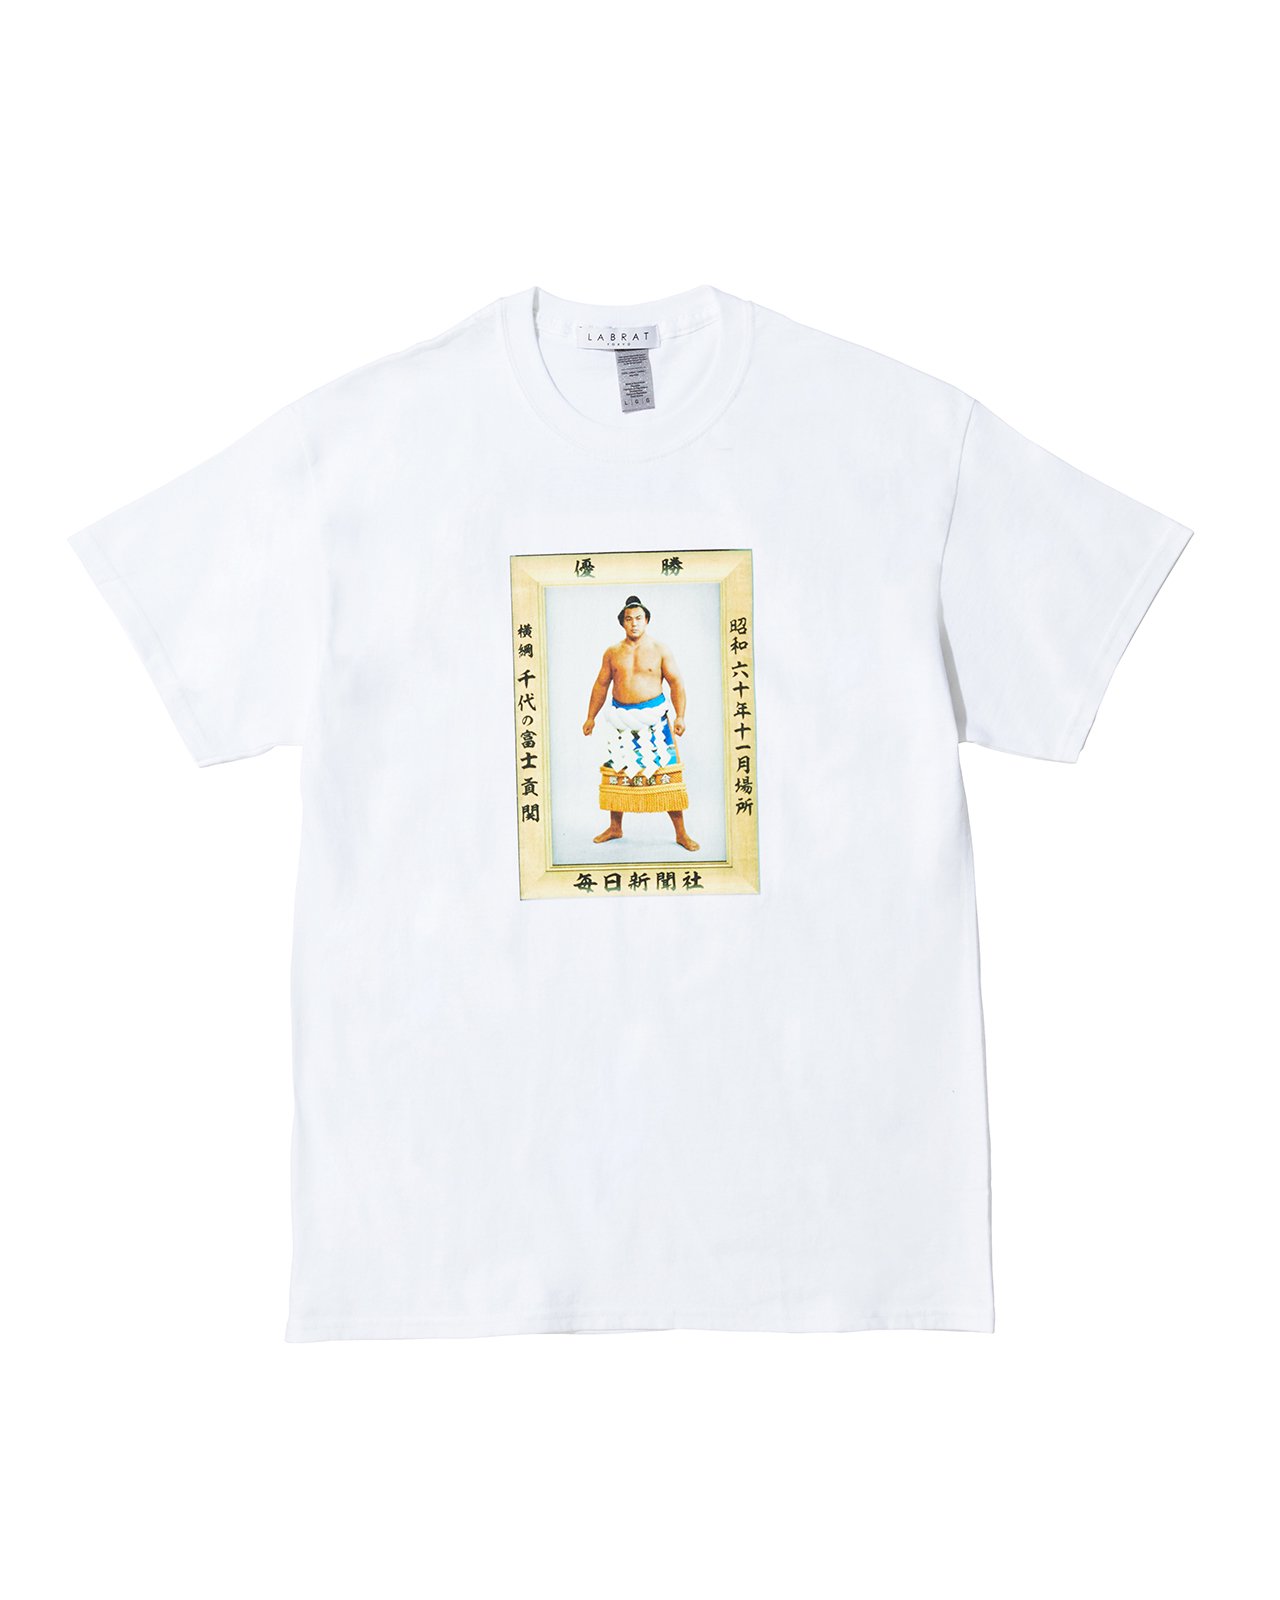 千代の富士 for LABRAT JR両国駅限定販売 Tシャツ（WHITE）（size: S～XL） - 千代の富士オンラインショップ